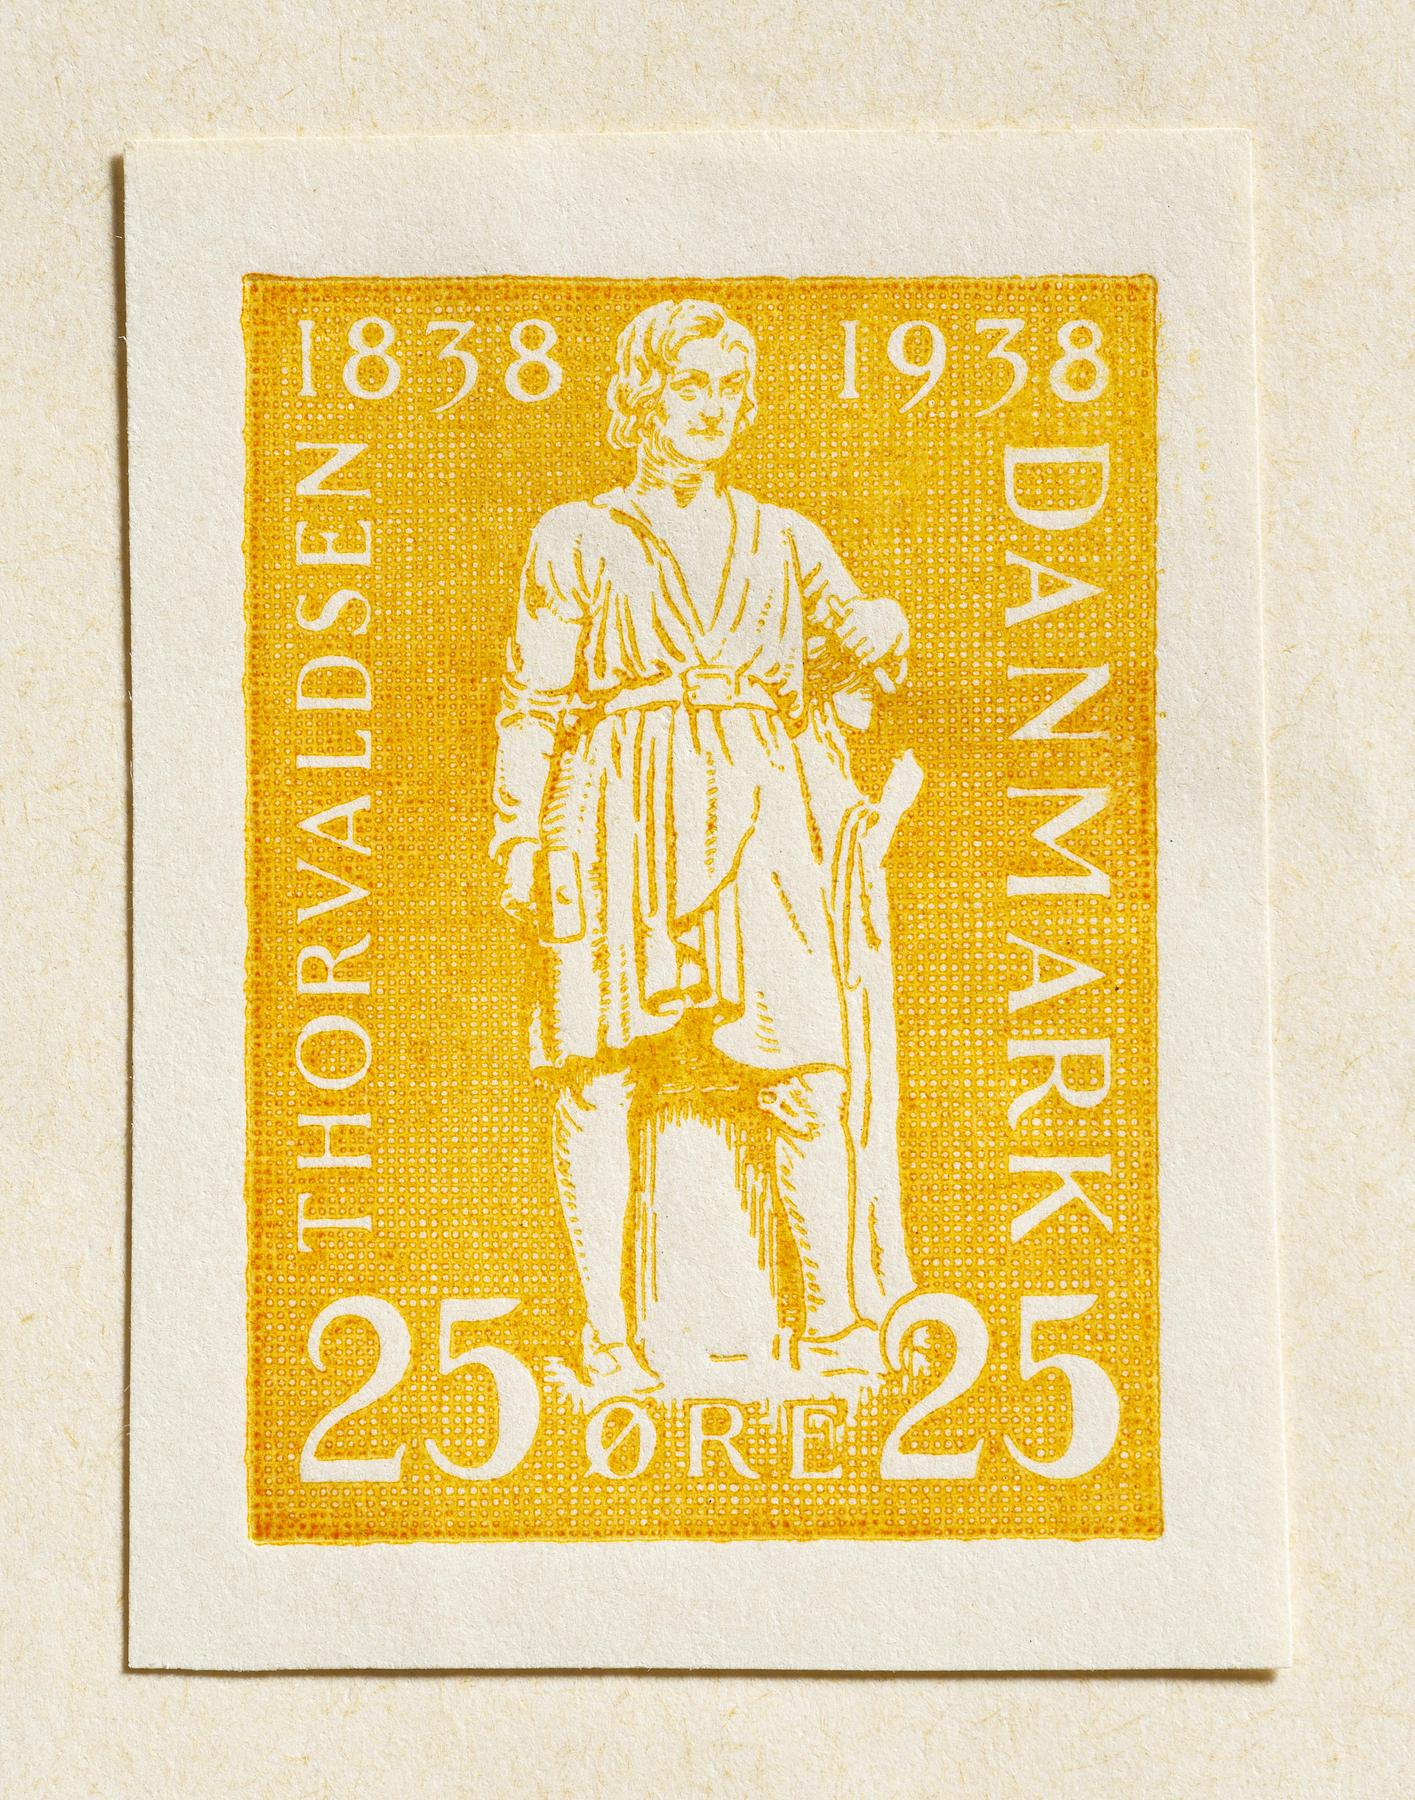 Prøvetryk af udkast til frimærke med Thorvaldsens selvportrætstatue, E2354,2